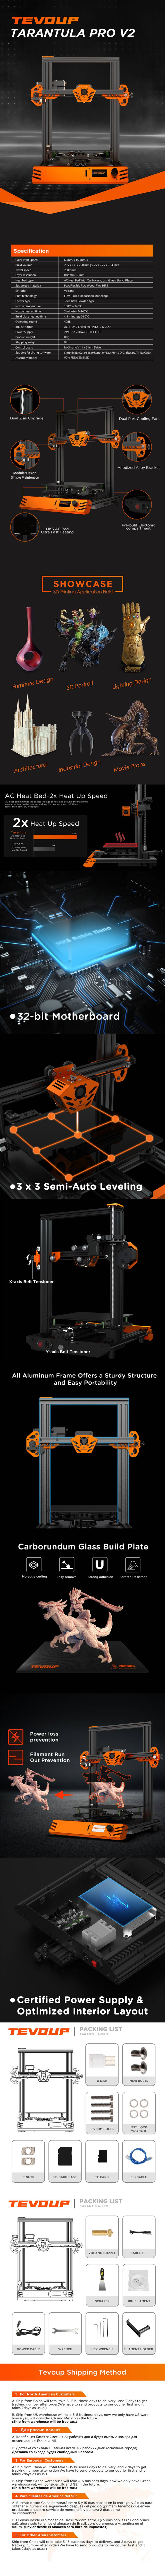 TEVOUP-Tarantula-Pro-3D-Printer-Kit-235x235x250mm-Build-Volume-1970151-1